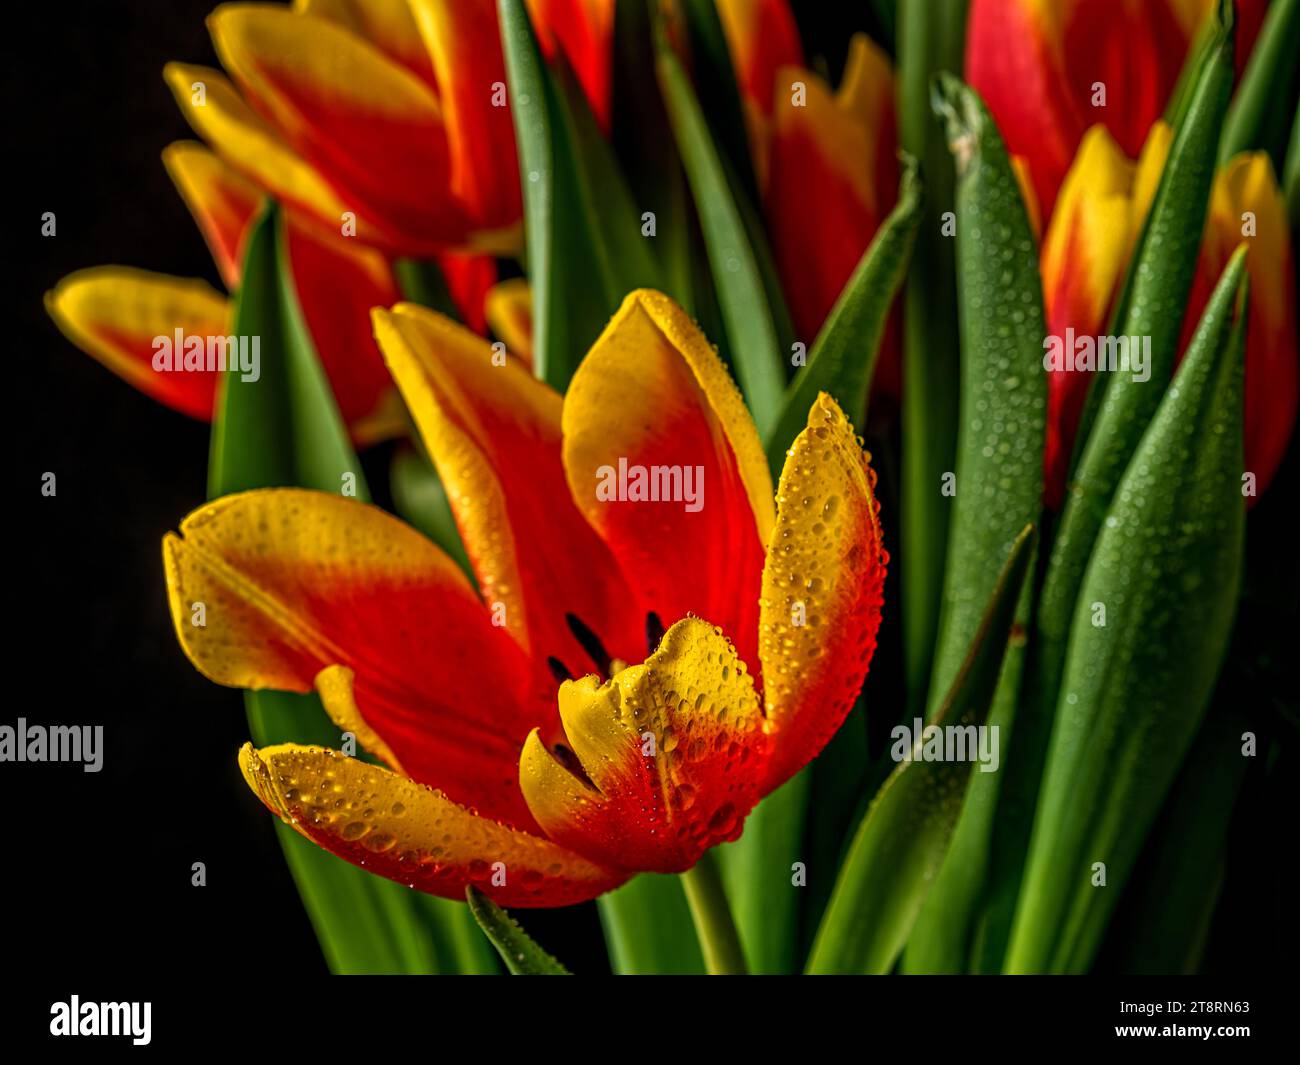 Tulipes, Tulipa, est un genre de géophytes bulbifères herbacées pérennes à floraison printanière Banque D'Images